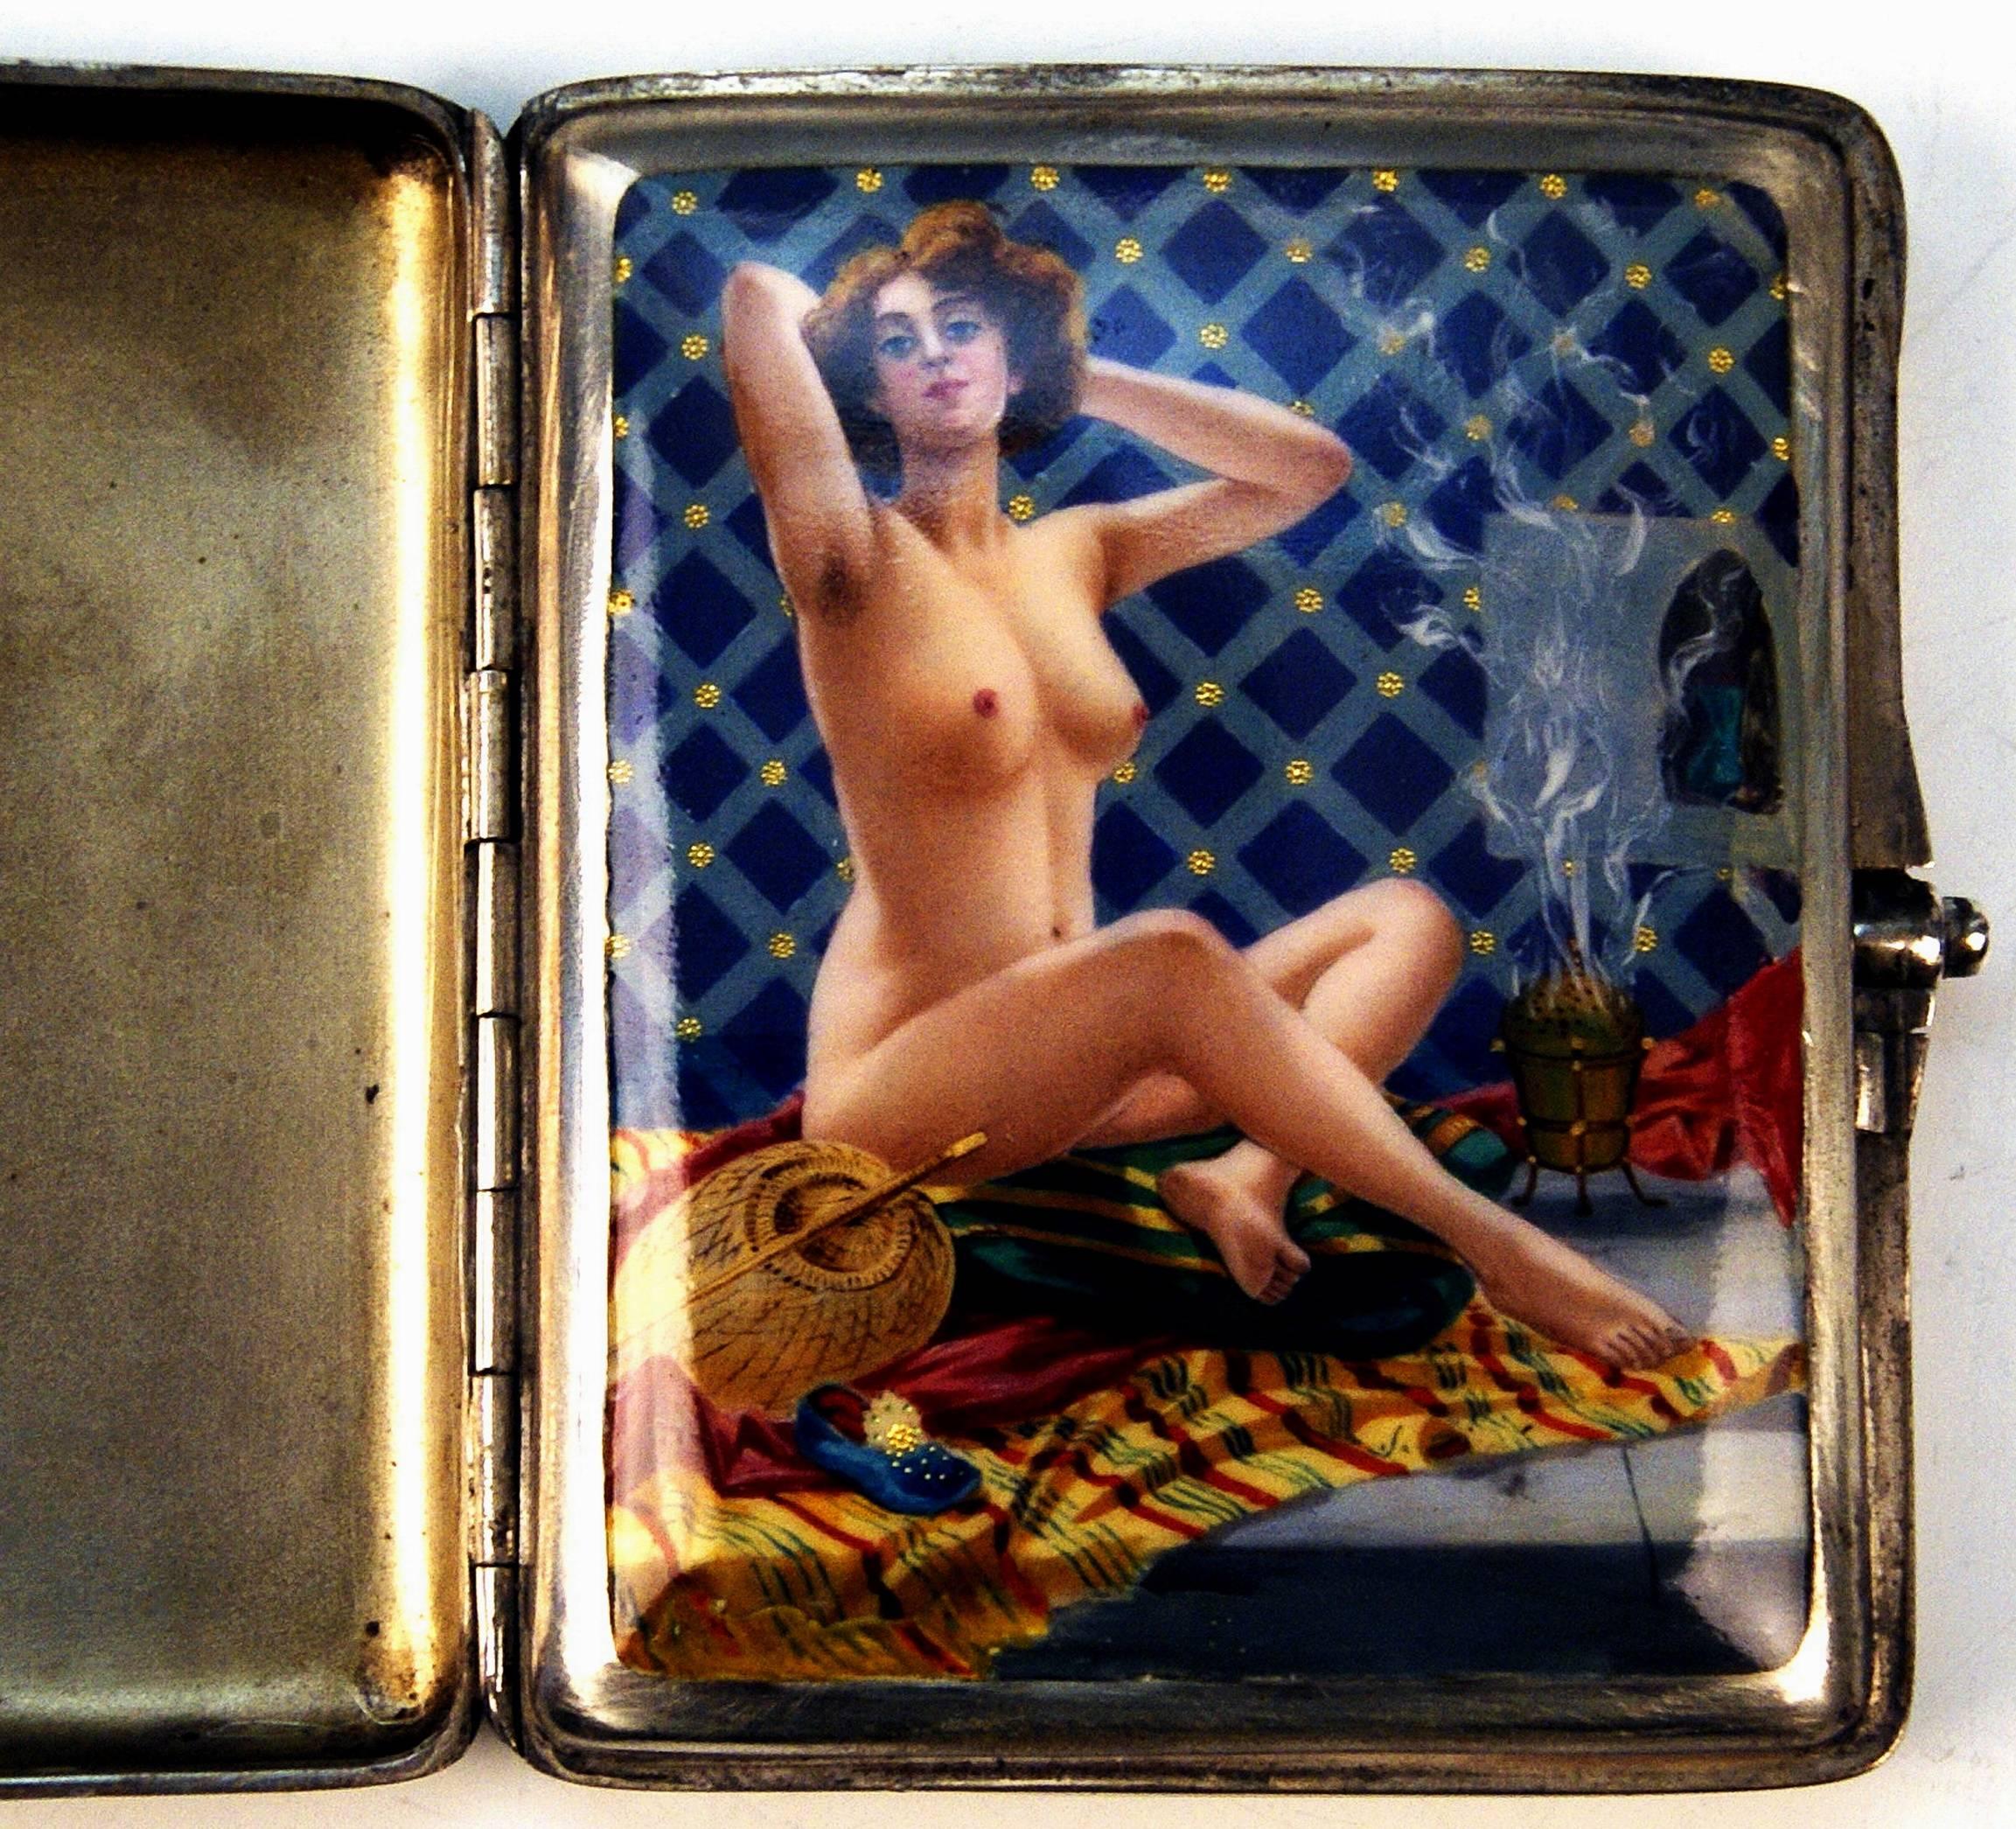 Sehr interessantes Zigarettenetui aus Silber 935 mit Emaillemalerei auf dem Innendeckel: Nackte Dame im Badezimmer, um 1890.

Der Innendeckel ist mit einem wunderschönen Emailbild verziert, auf dem folgende Szene gemalt ist: Ein schöner Frauenakt